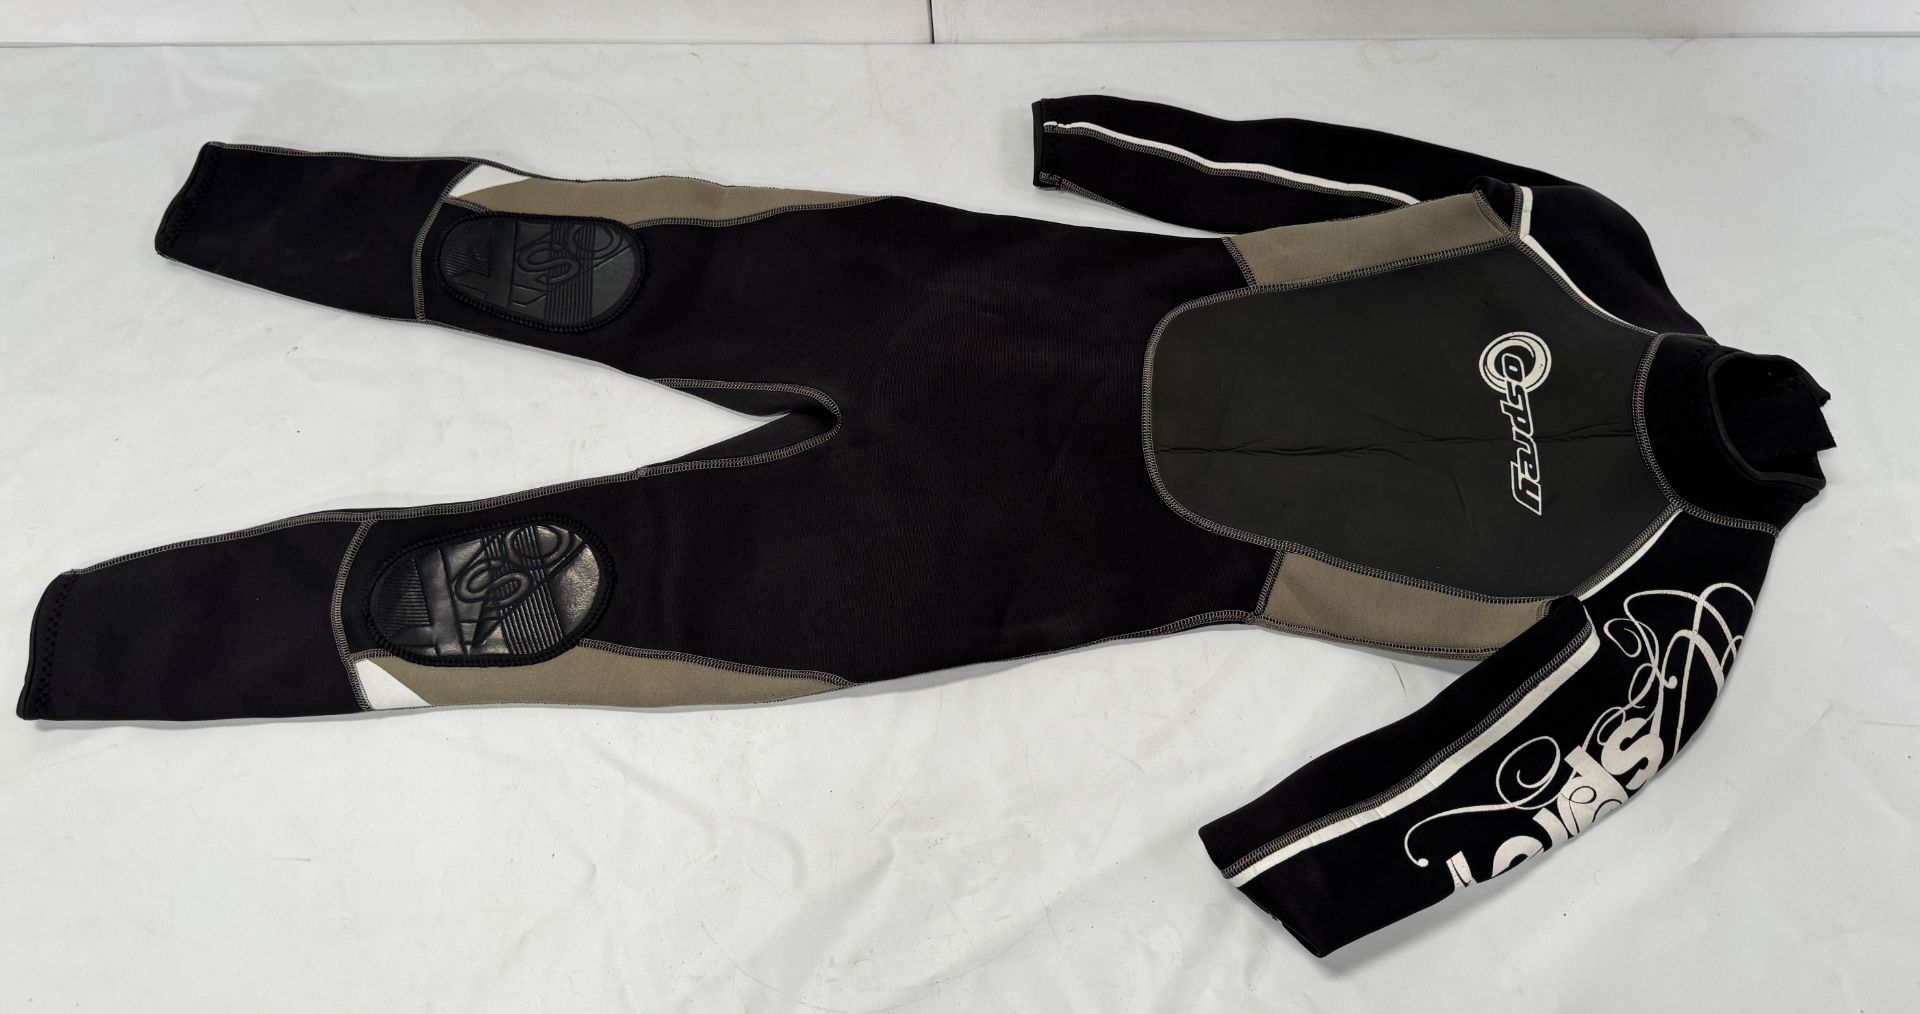 Kids Osprey Wetsuit, Aqua Lung Woman’s Wetsuit (Size M), Beuchat & Seac Wetsuits (Location: - Bild 4 aus 10